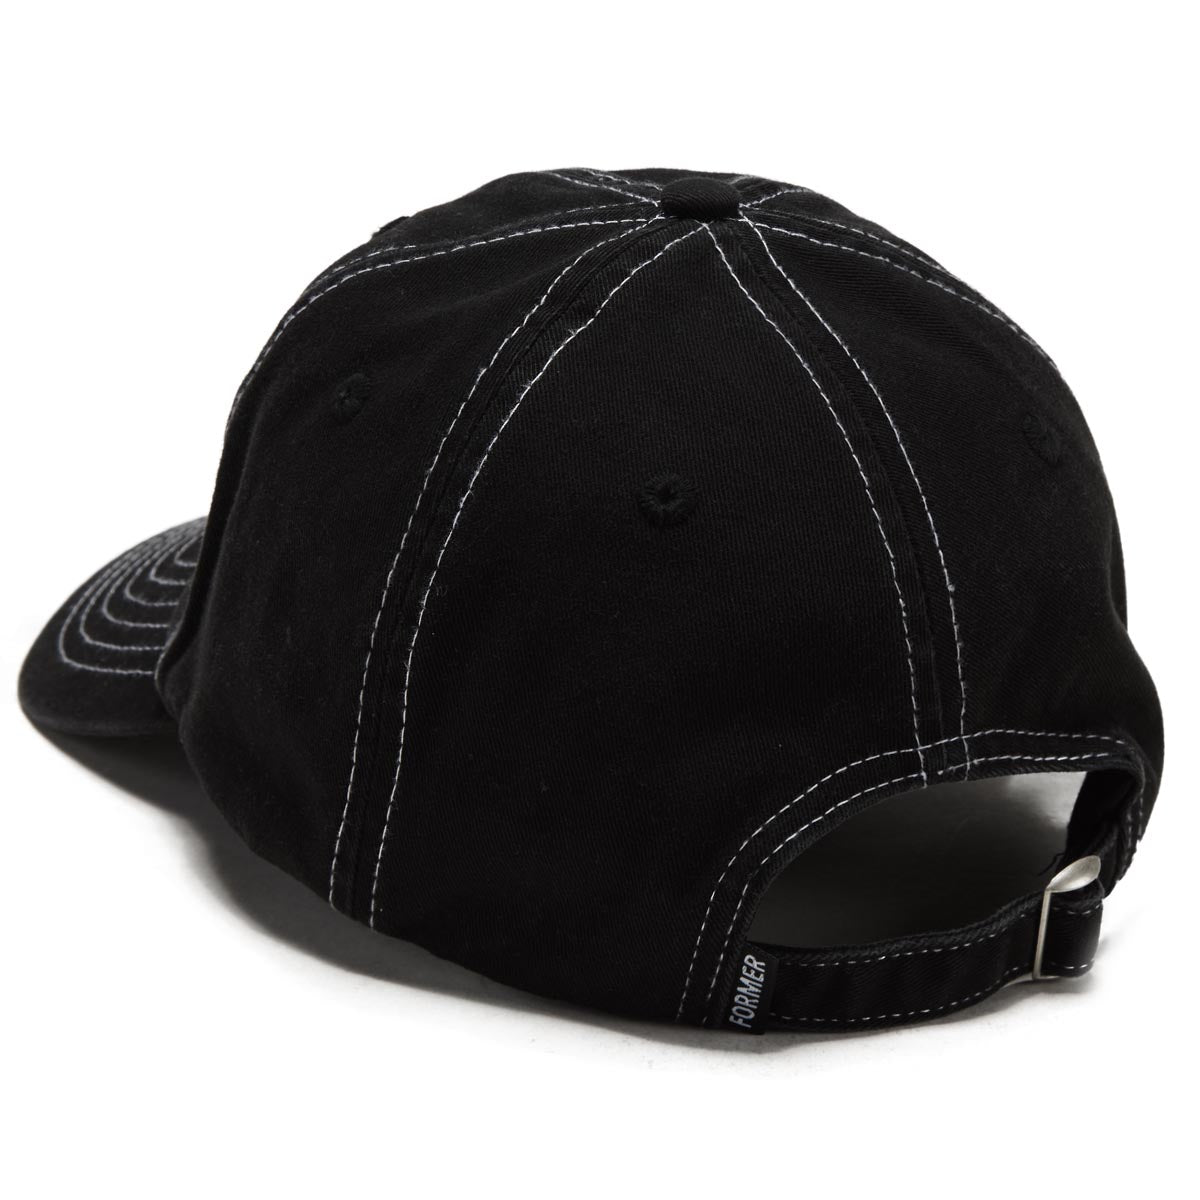 Former Franchise Slant Hat - Black image 2